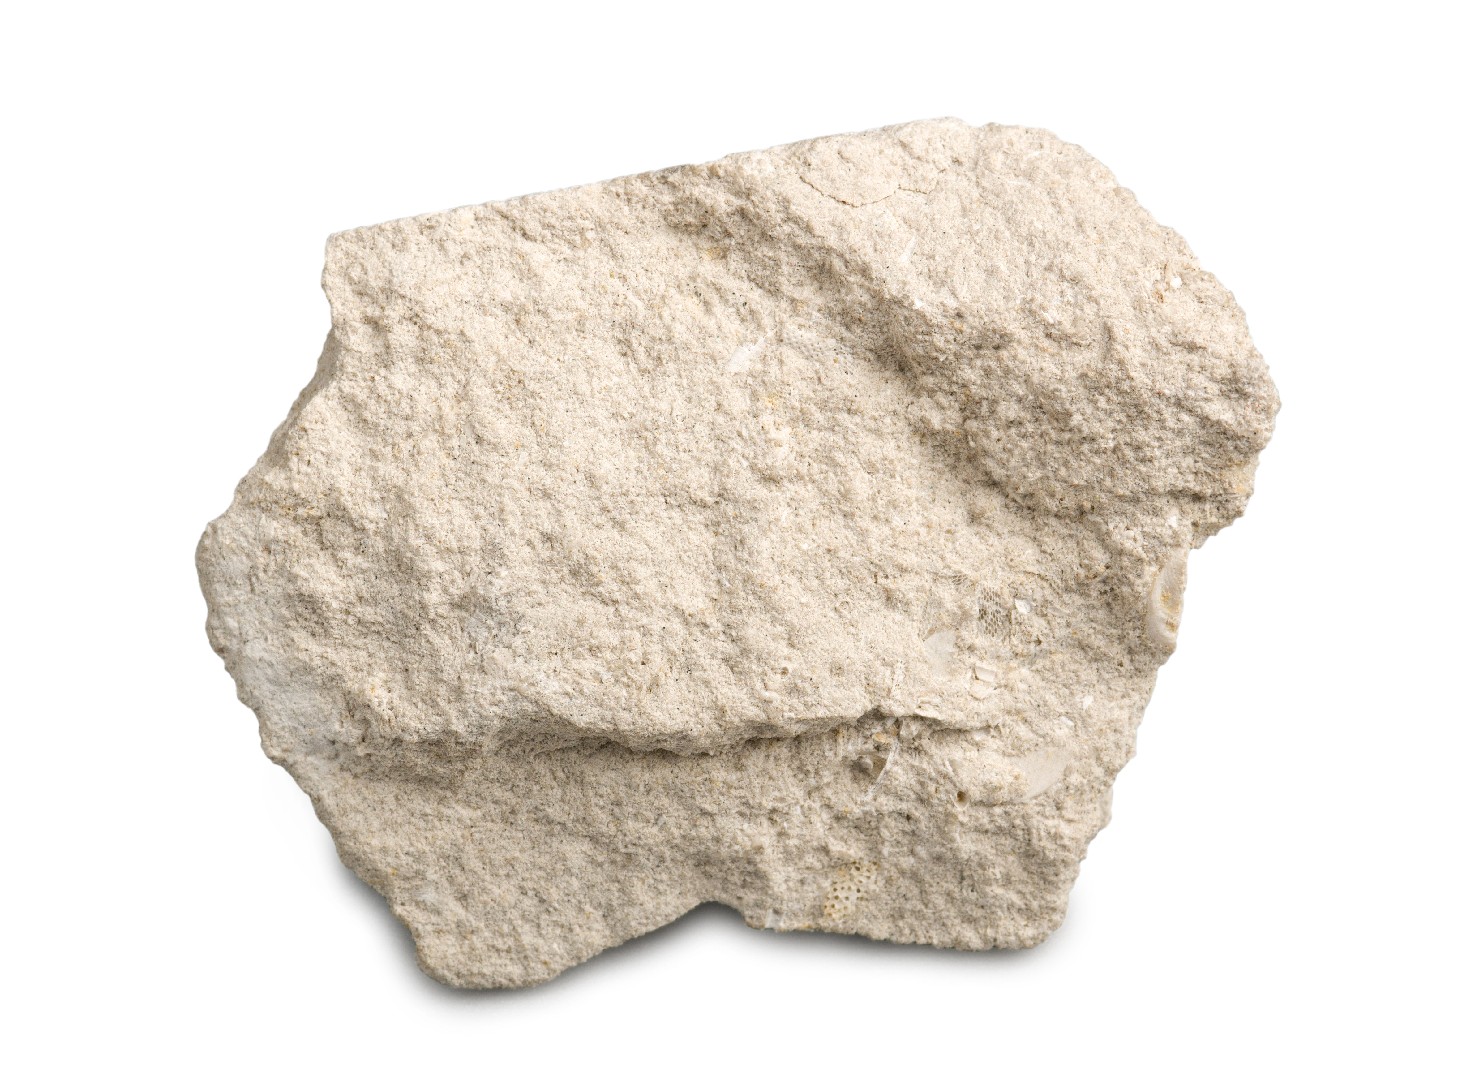 Calcário (Limestone)